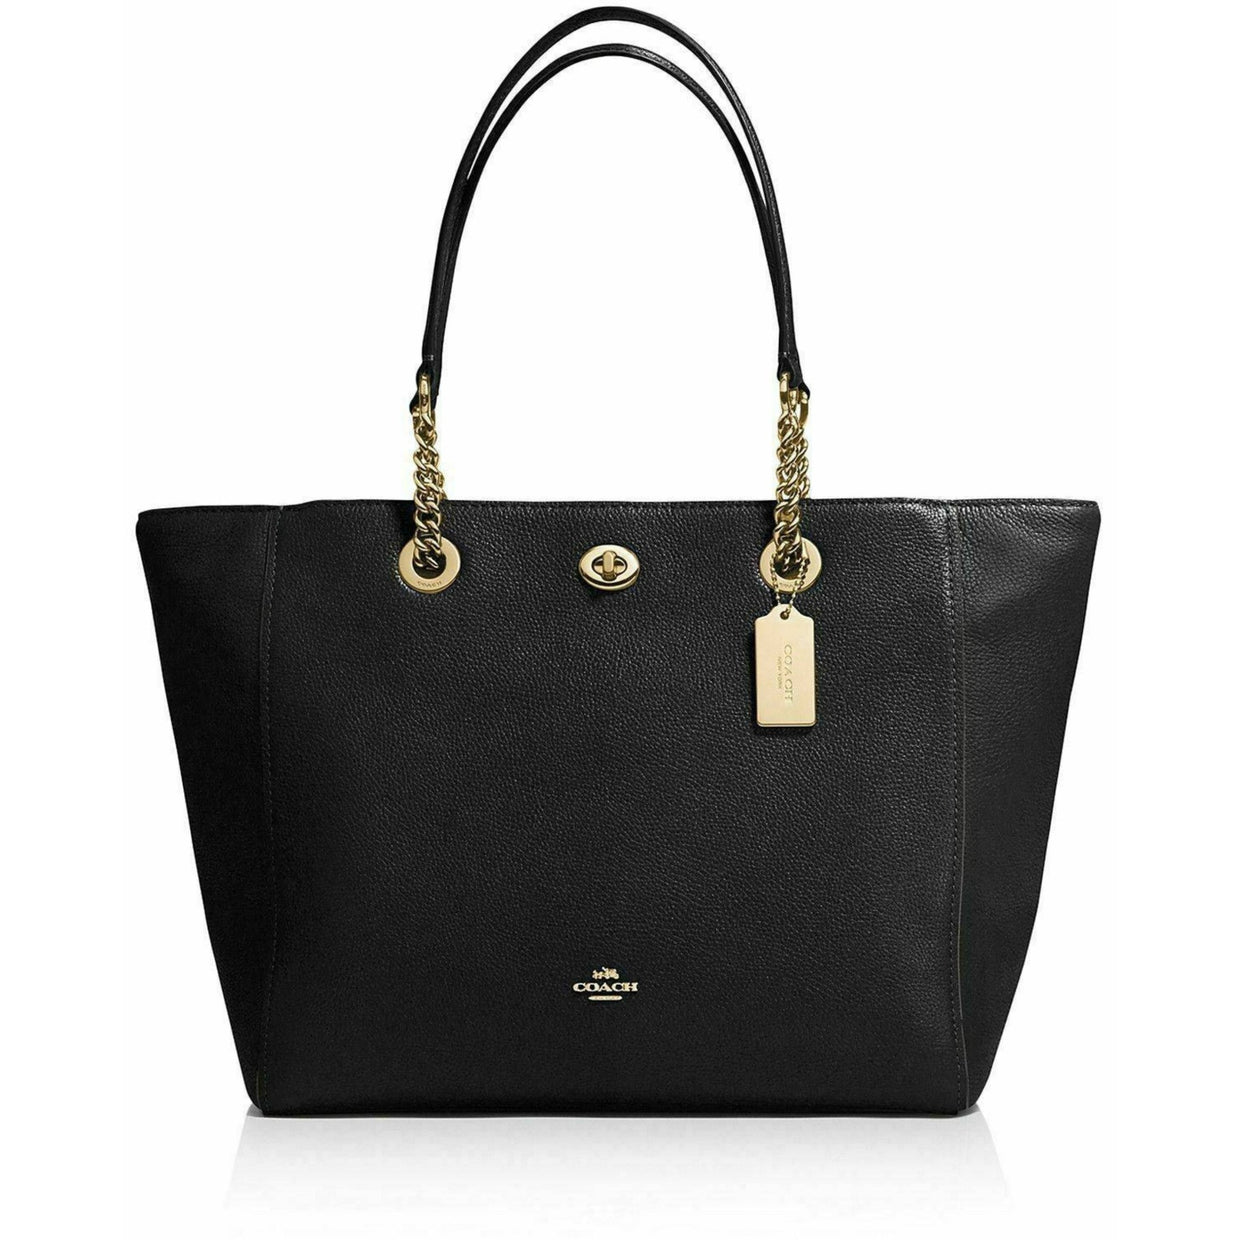 Buy Women Handbags | Handbags Online Shopping | Designer Handbags ...